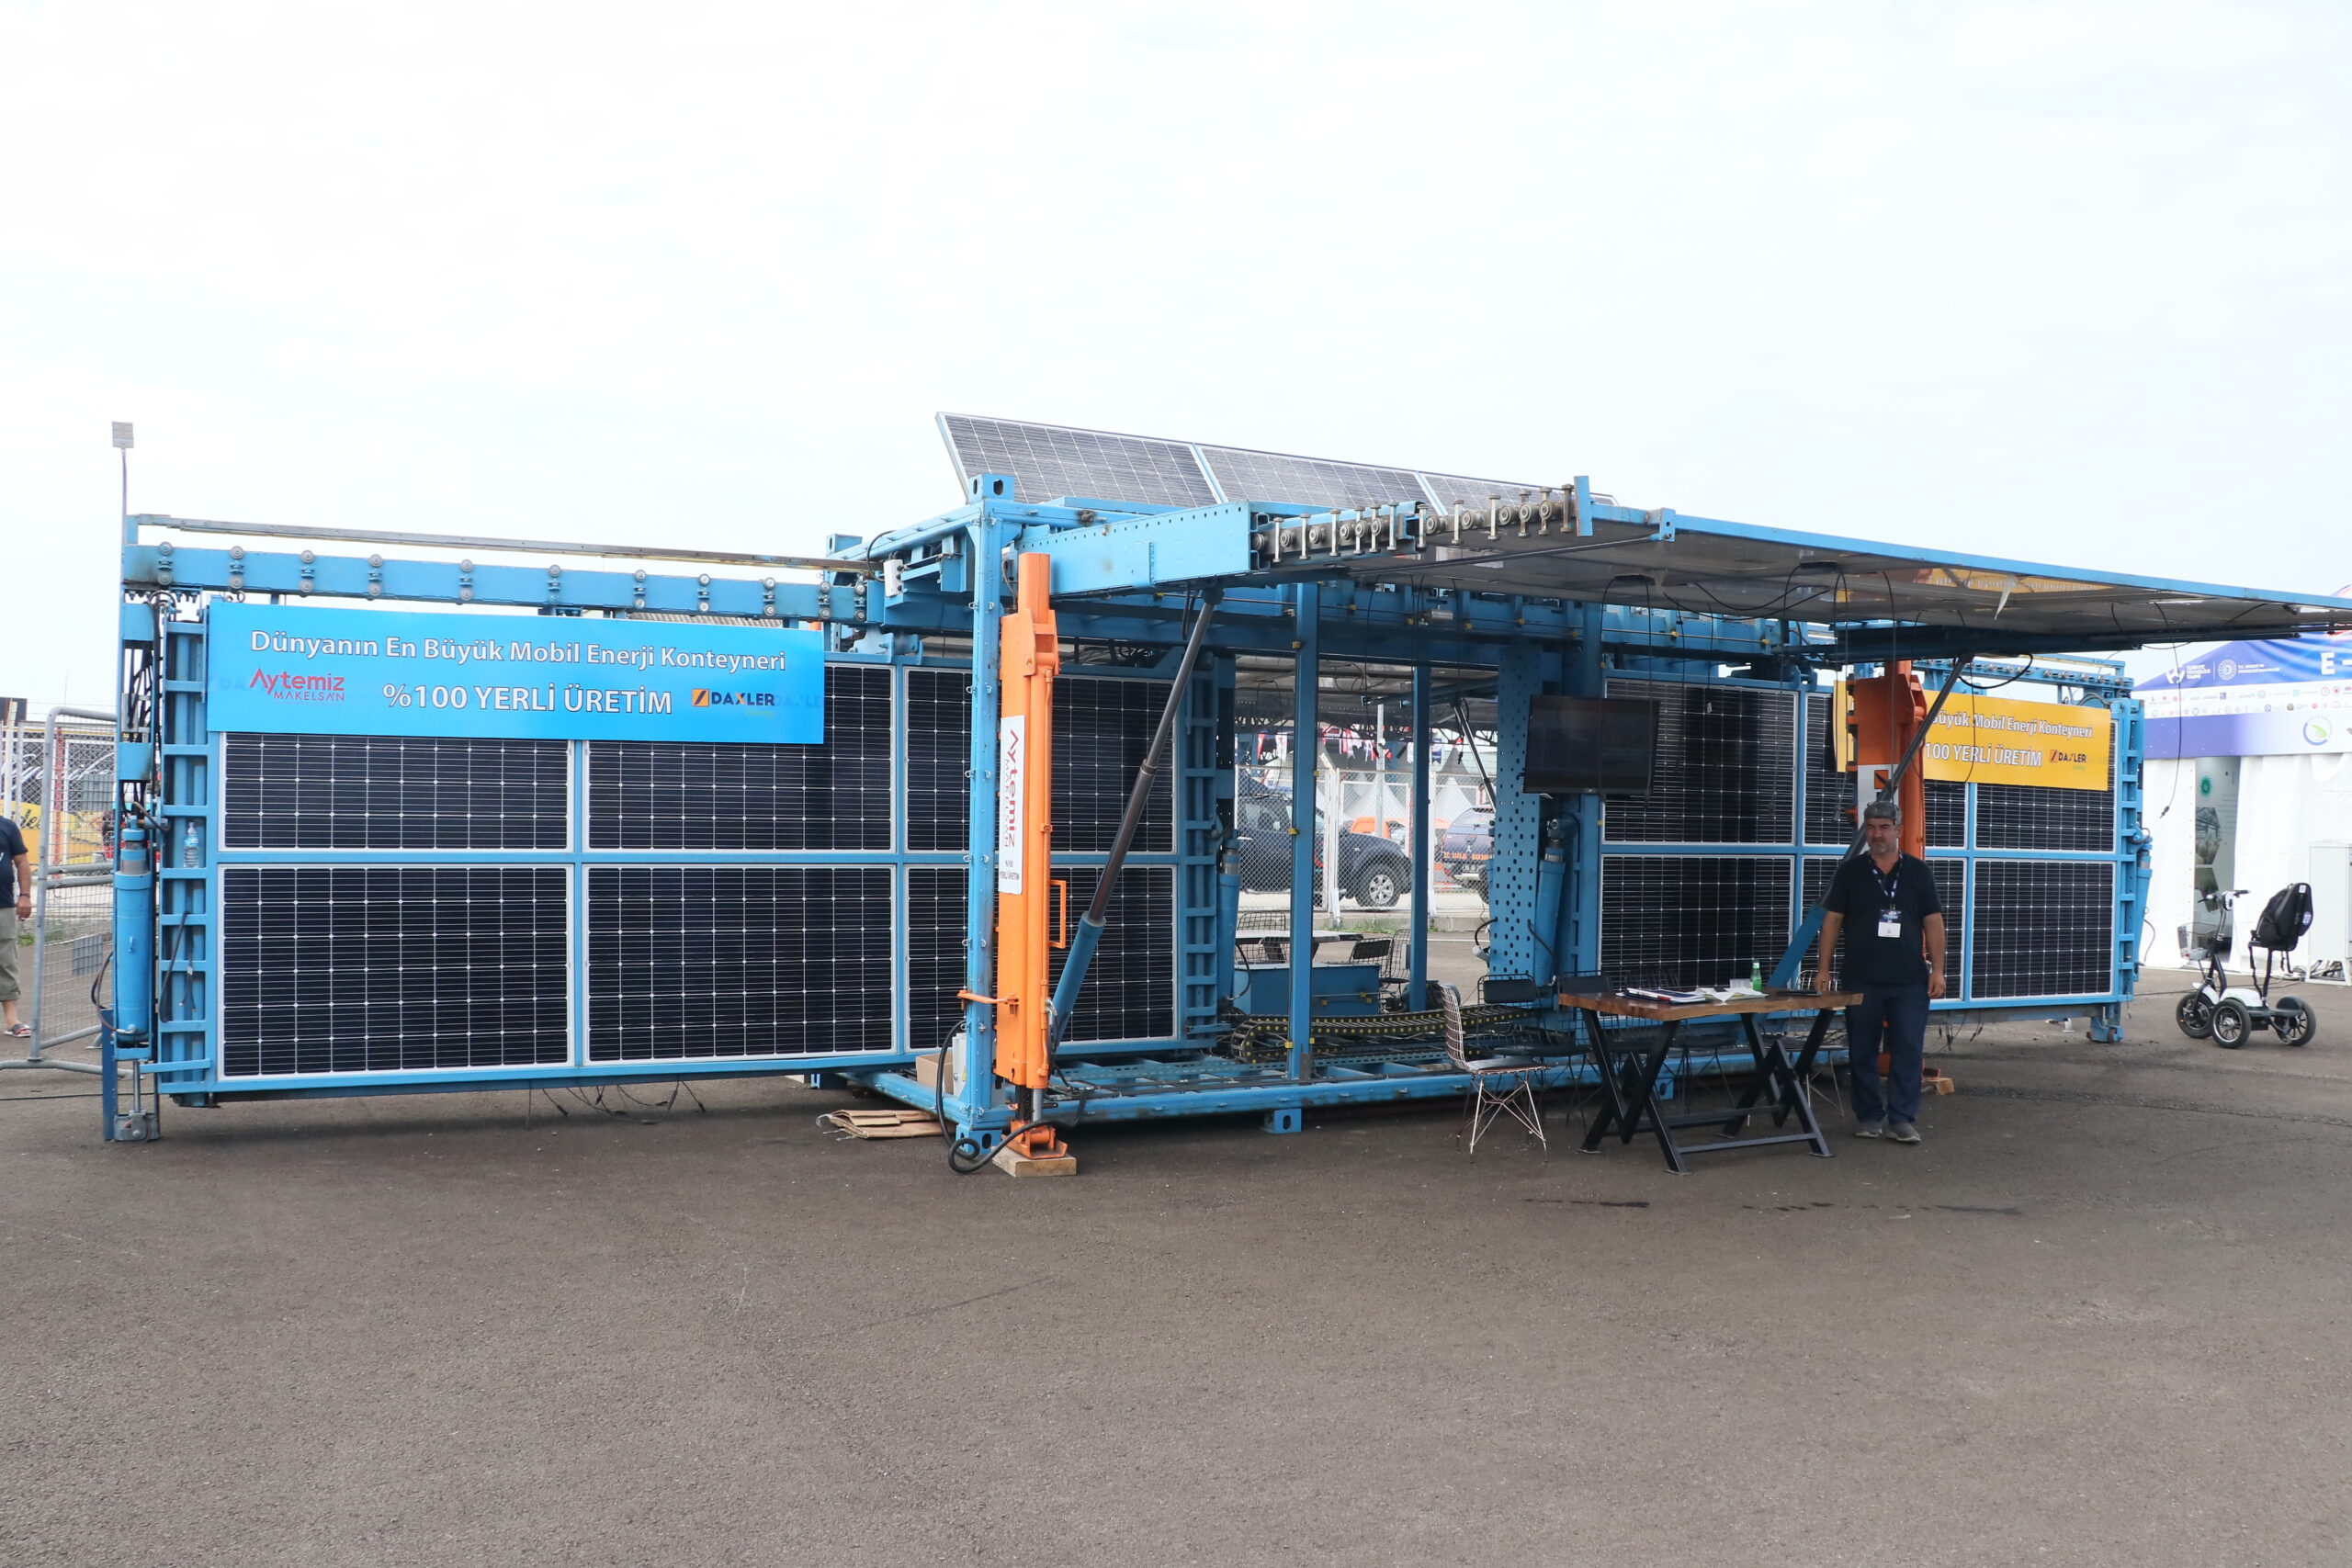 “Mobil güneş enerji jeneratörü” elektrik ihtiyacı olan yere götürülebilecek